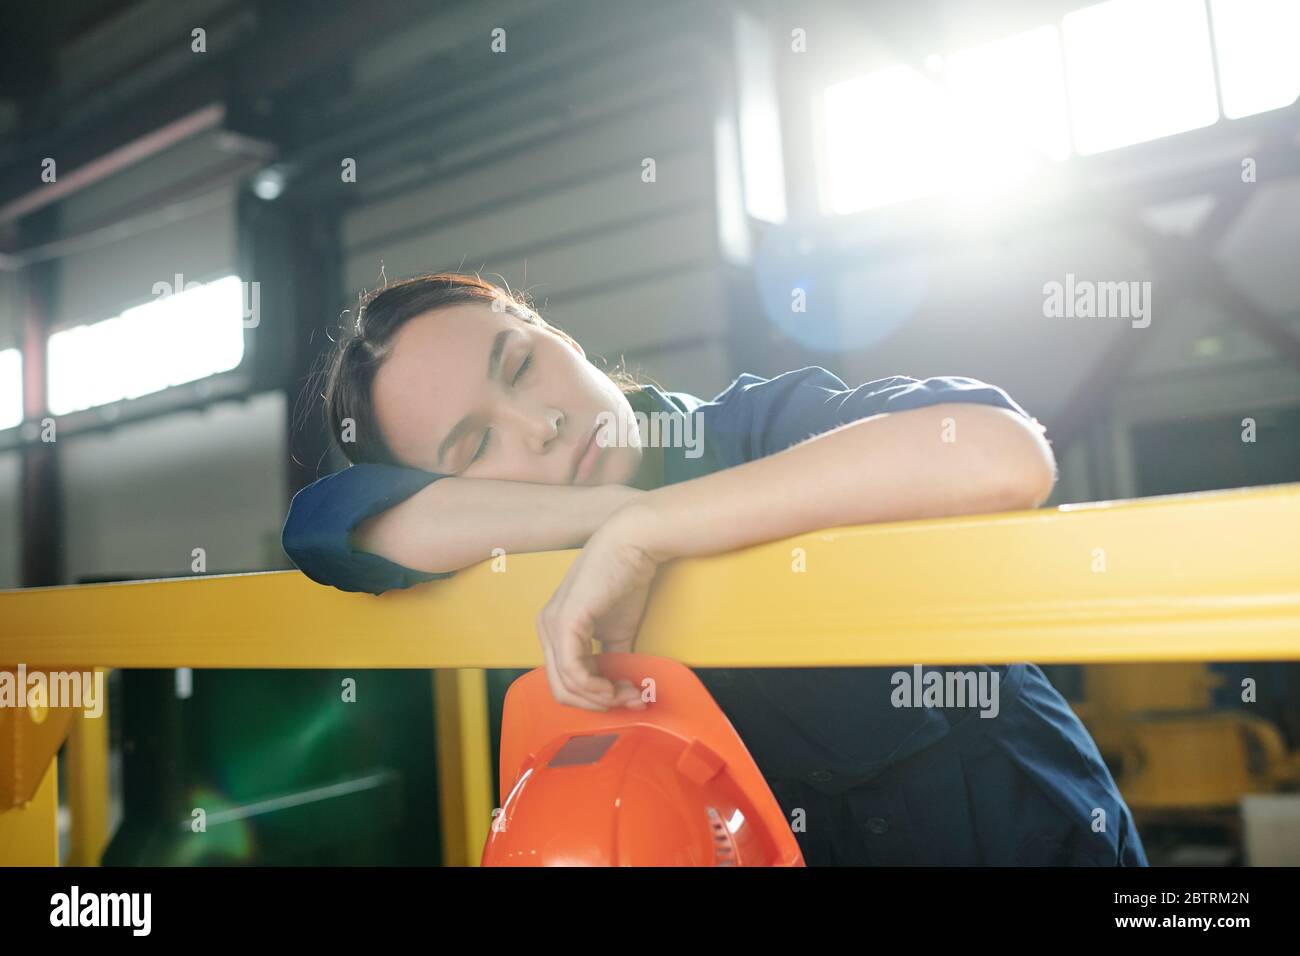 Stanco lavoratore asiatico dormire con l'hardHat in mano e appoggiarsi sulla ringhiera in fabbrica Foto Stock